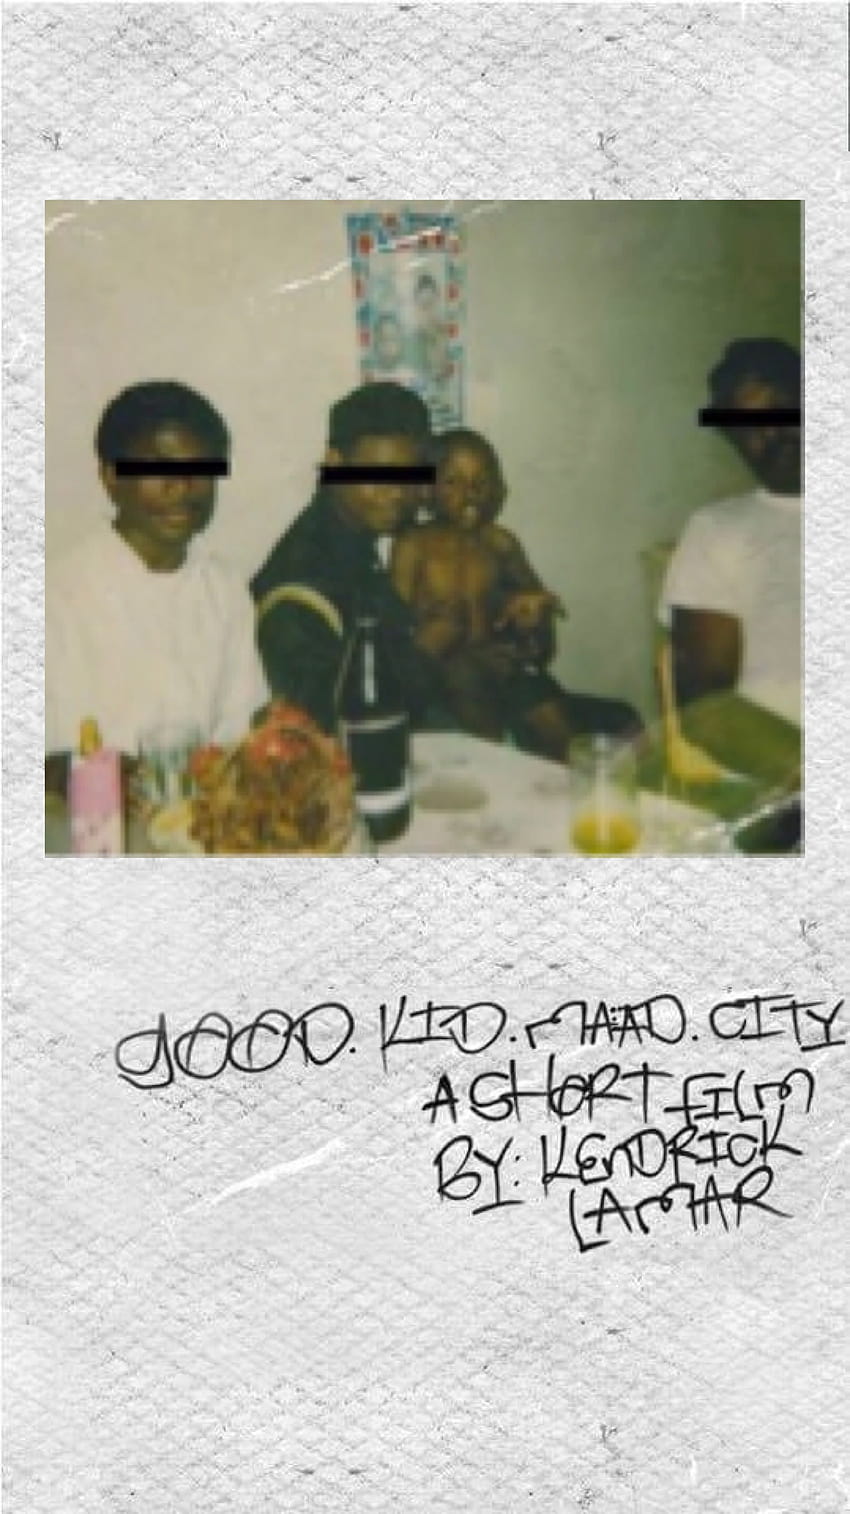 Kendrick Lamar: Good Kid, M.A.A.D City para iPhone 6/6S/7, good kid maad city fondo de pantalla del teléfono